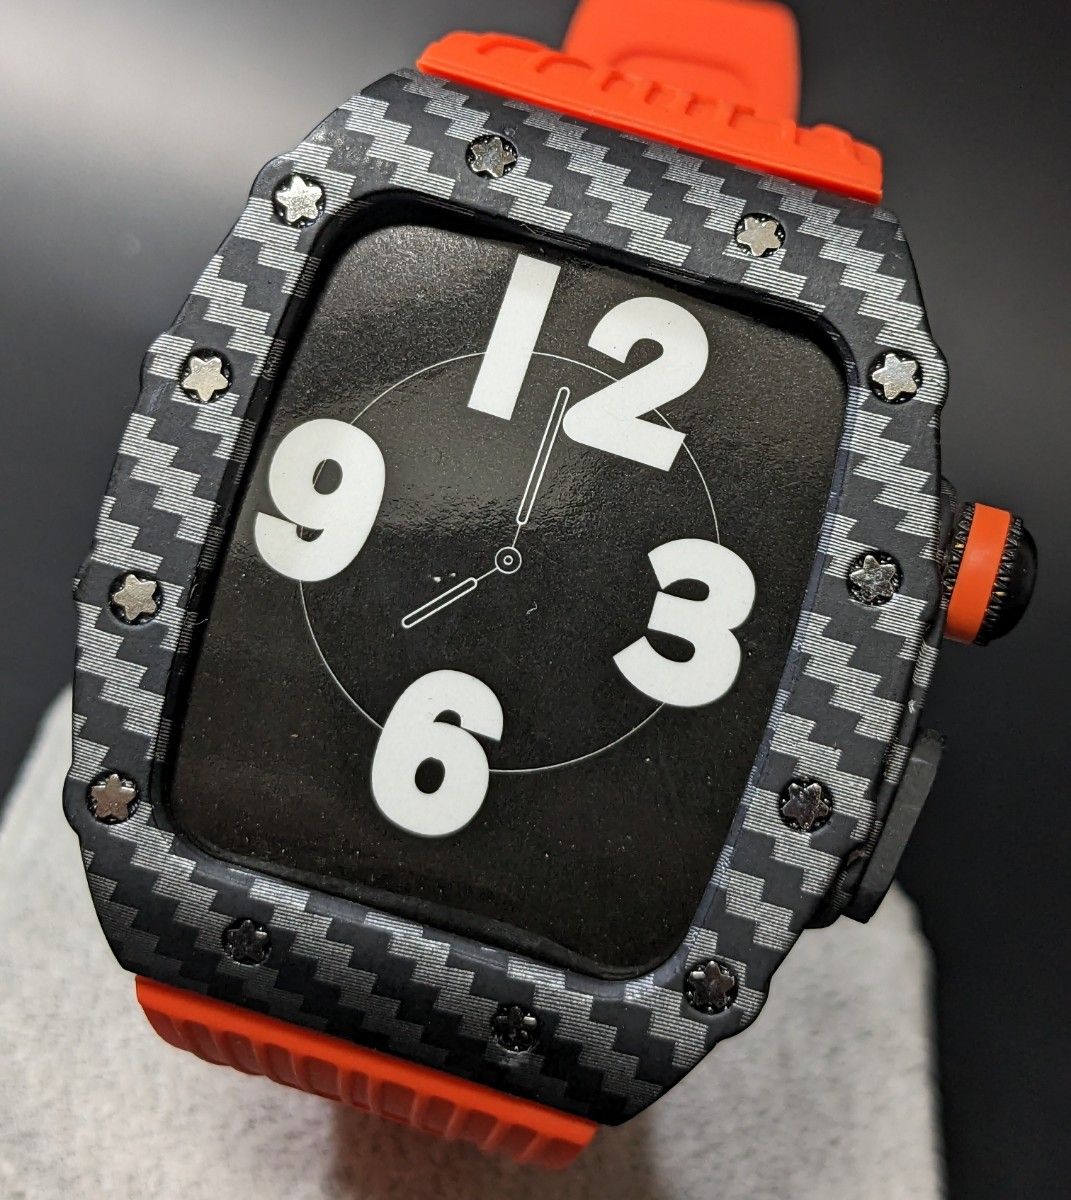 Apple Watch ラバーバンド カバー メタルケース アップルウォッチ カスタム 44mm ブラック オレンジ カーボン風